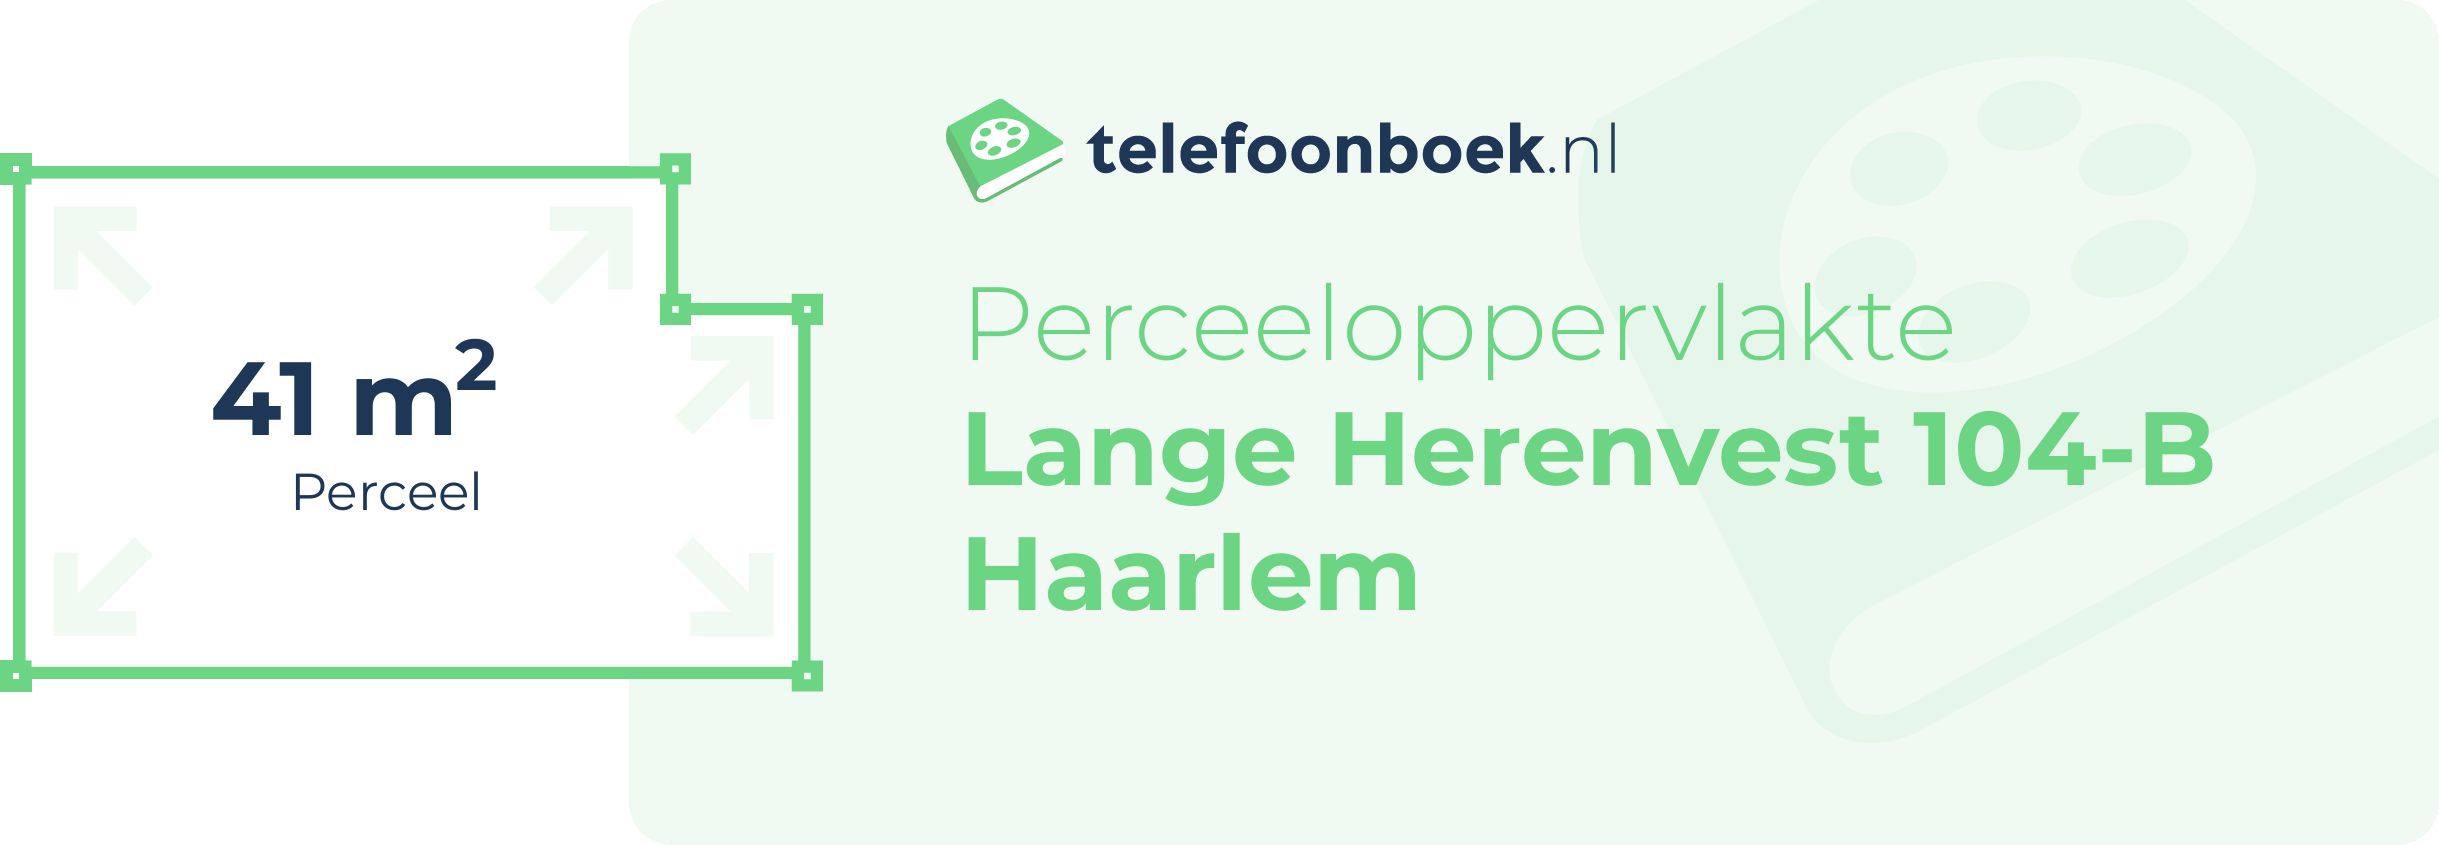 Perceeloppervlakte Lange Herenvest 104-B Haarlem